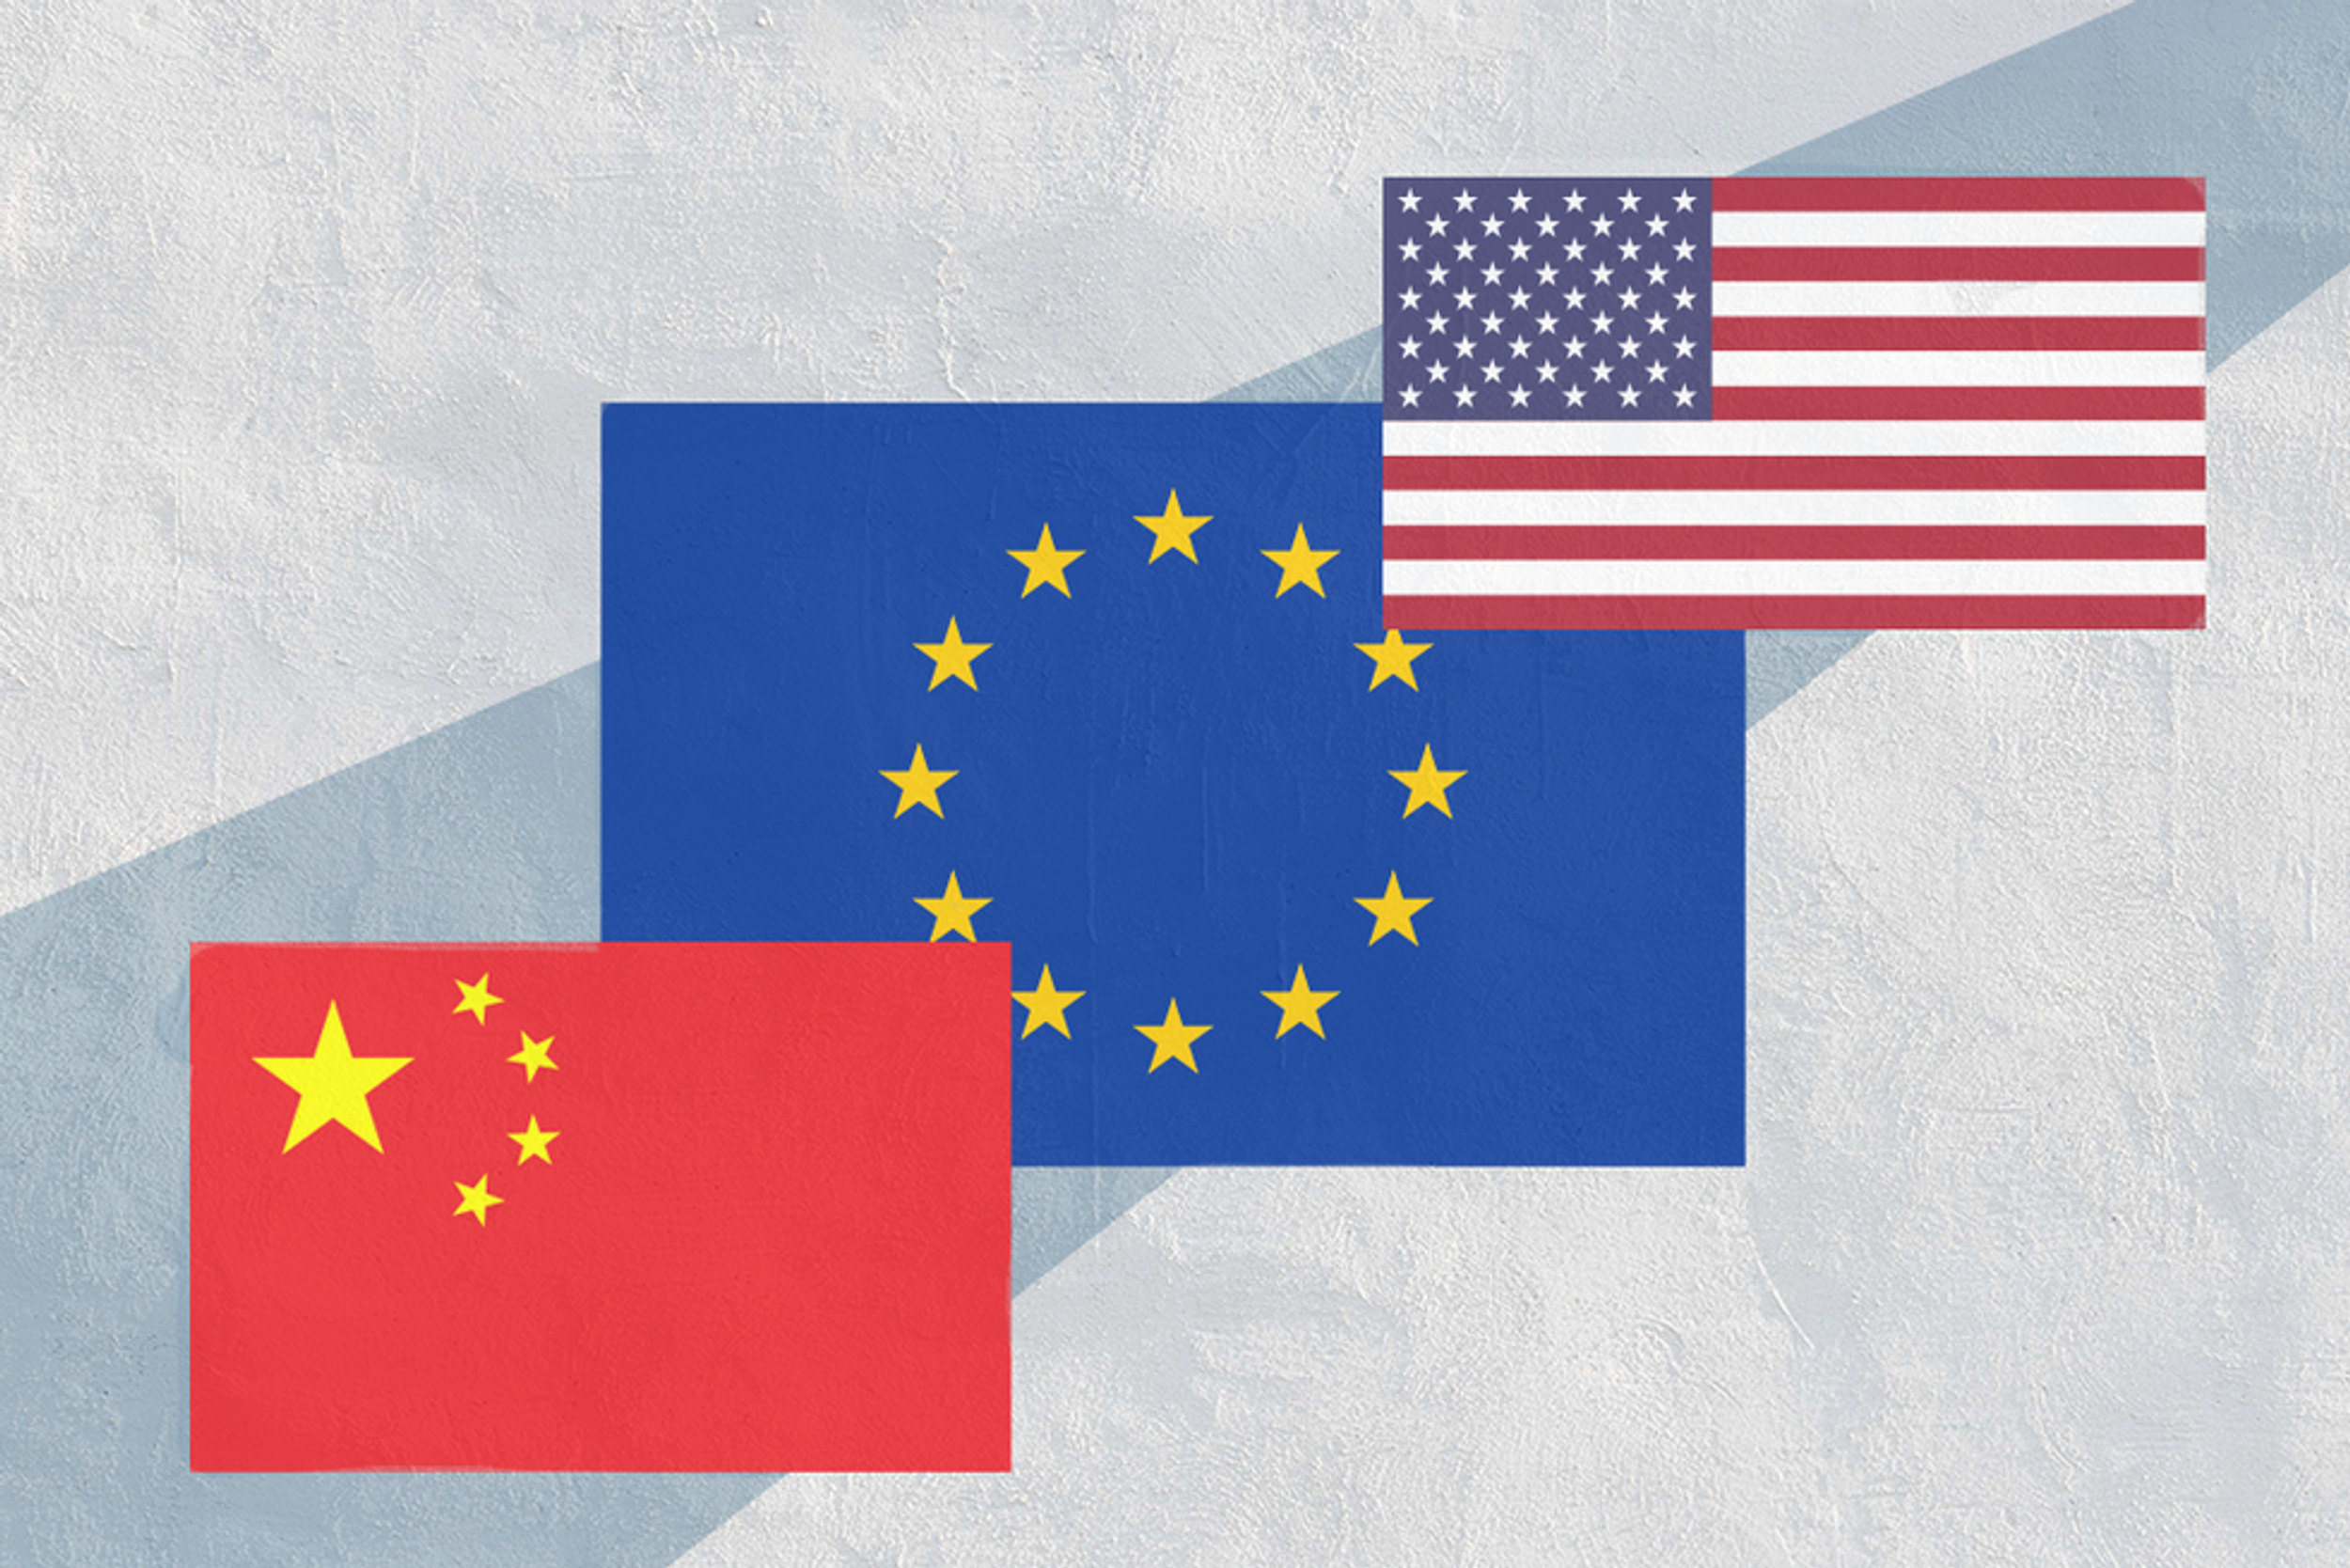 EU-China "reset" in limbo